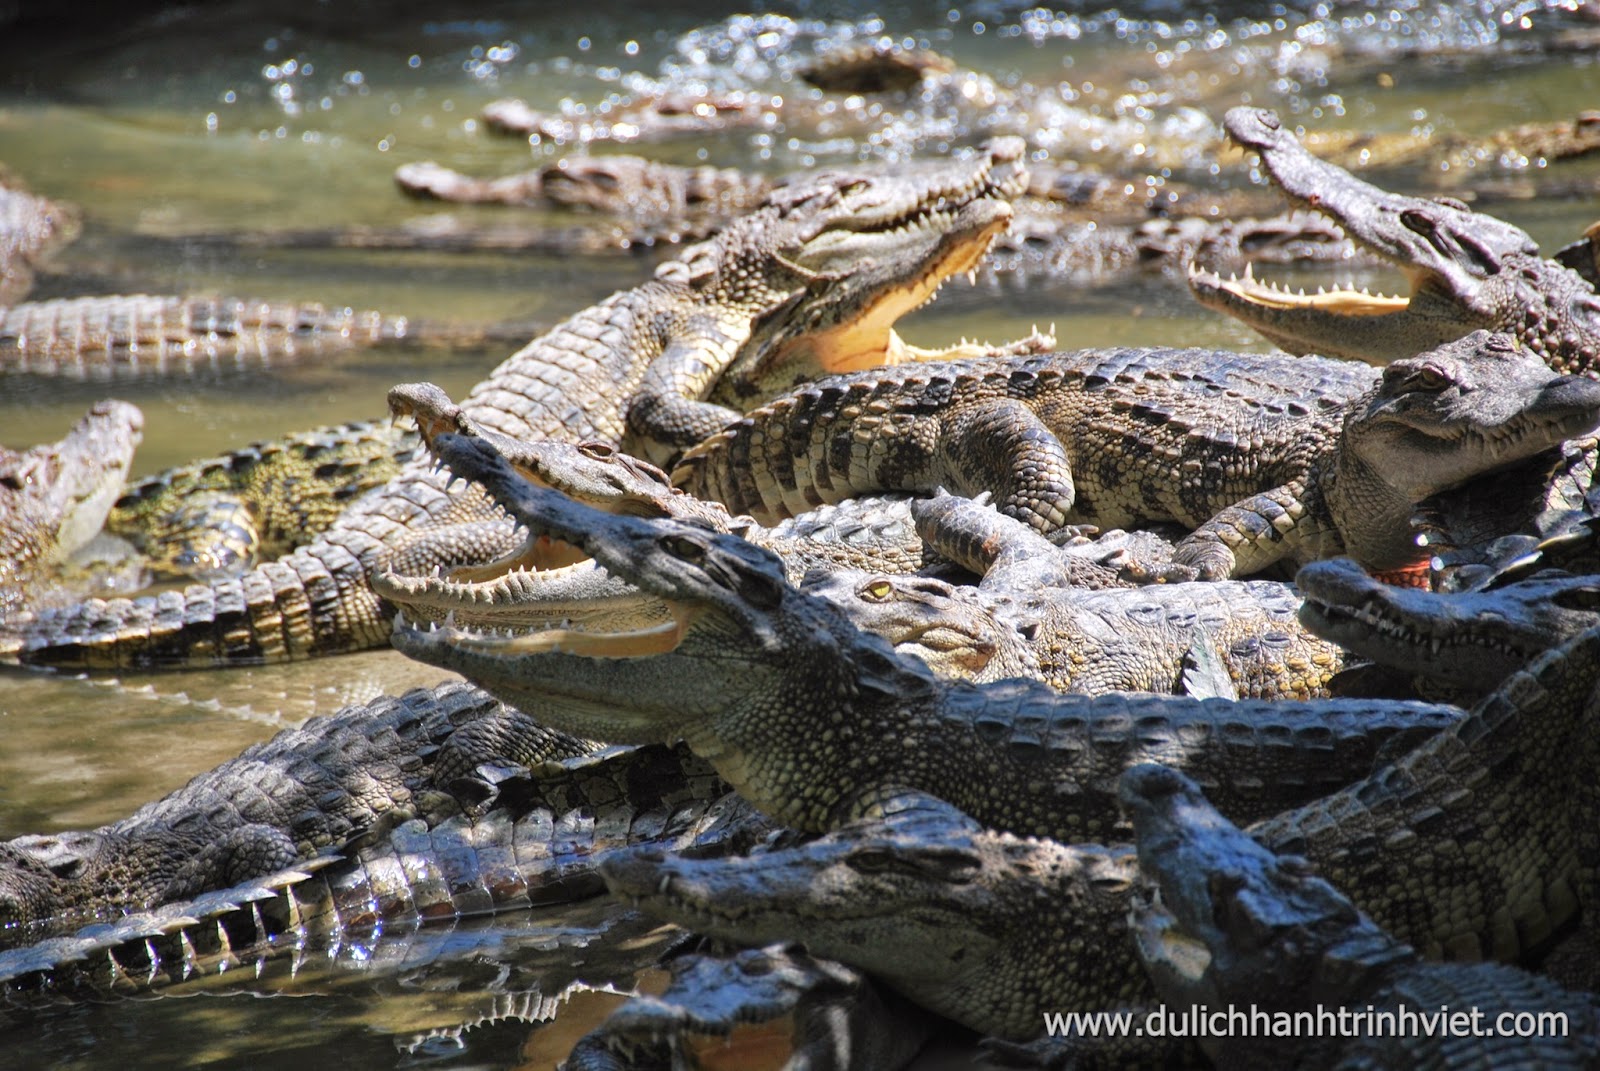 Tham quan khu du lịch sinh thái Cá Sấu Long Xuyên